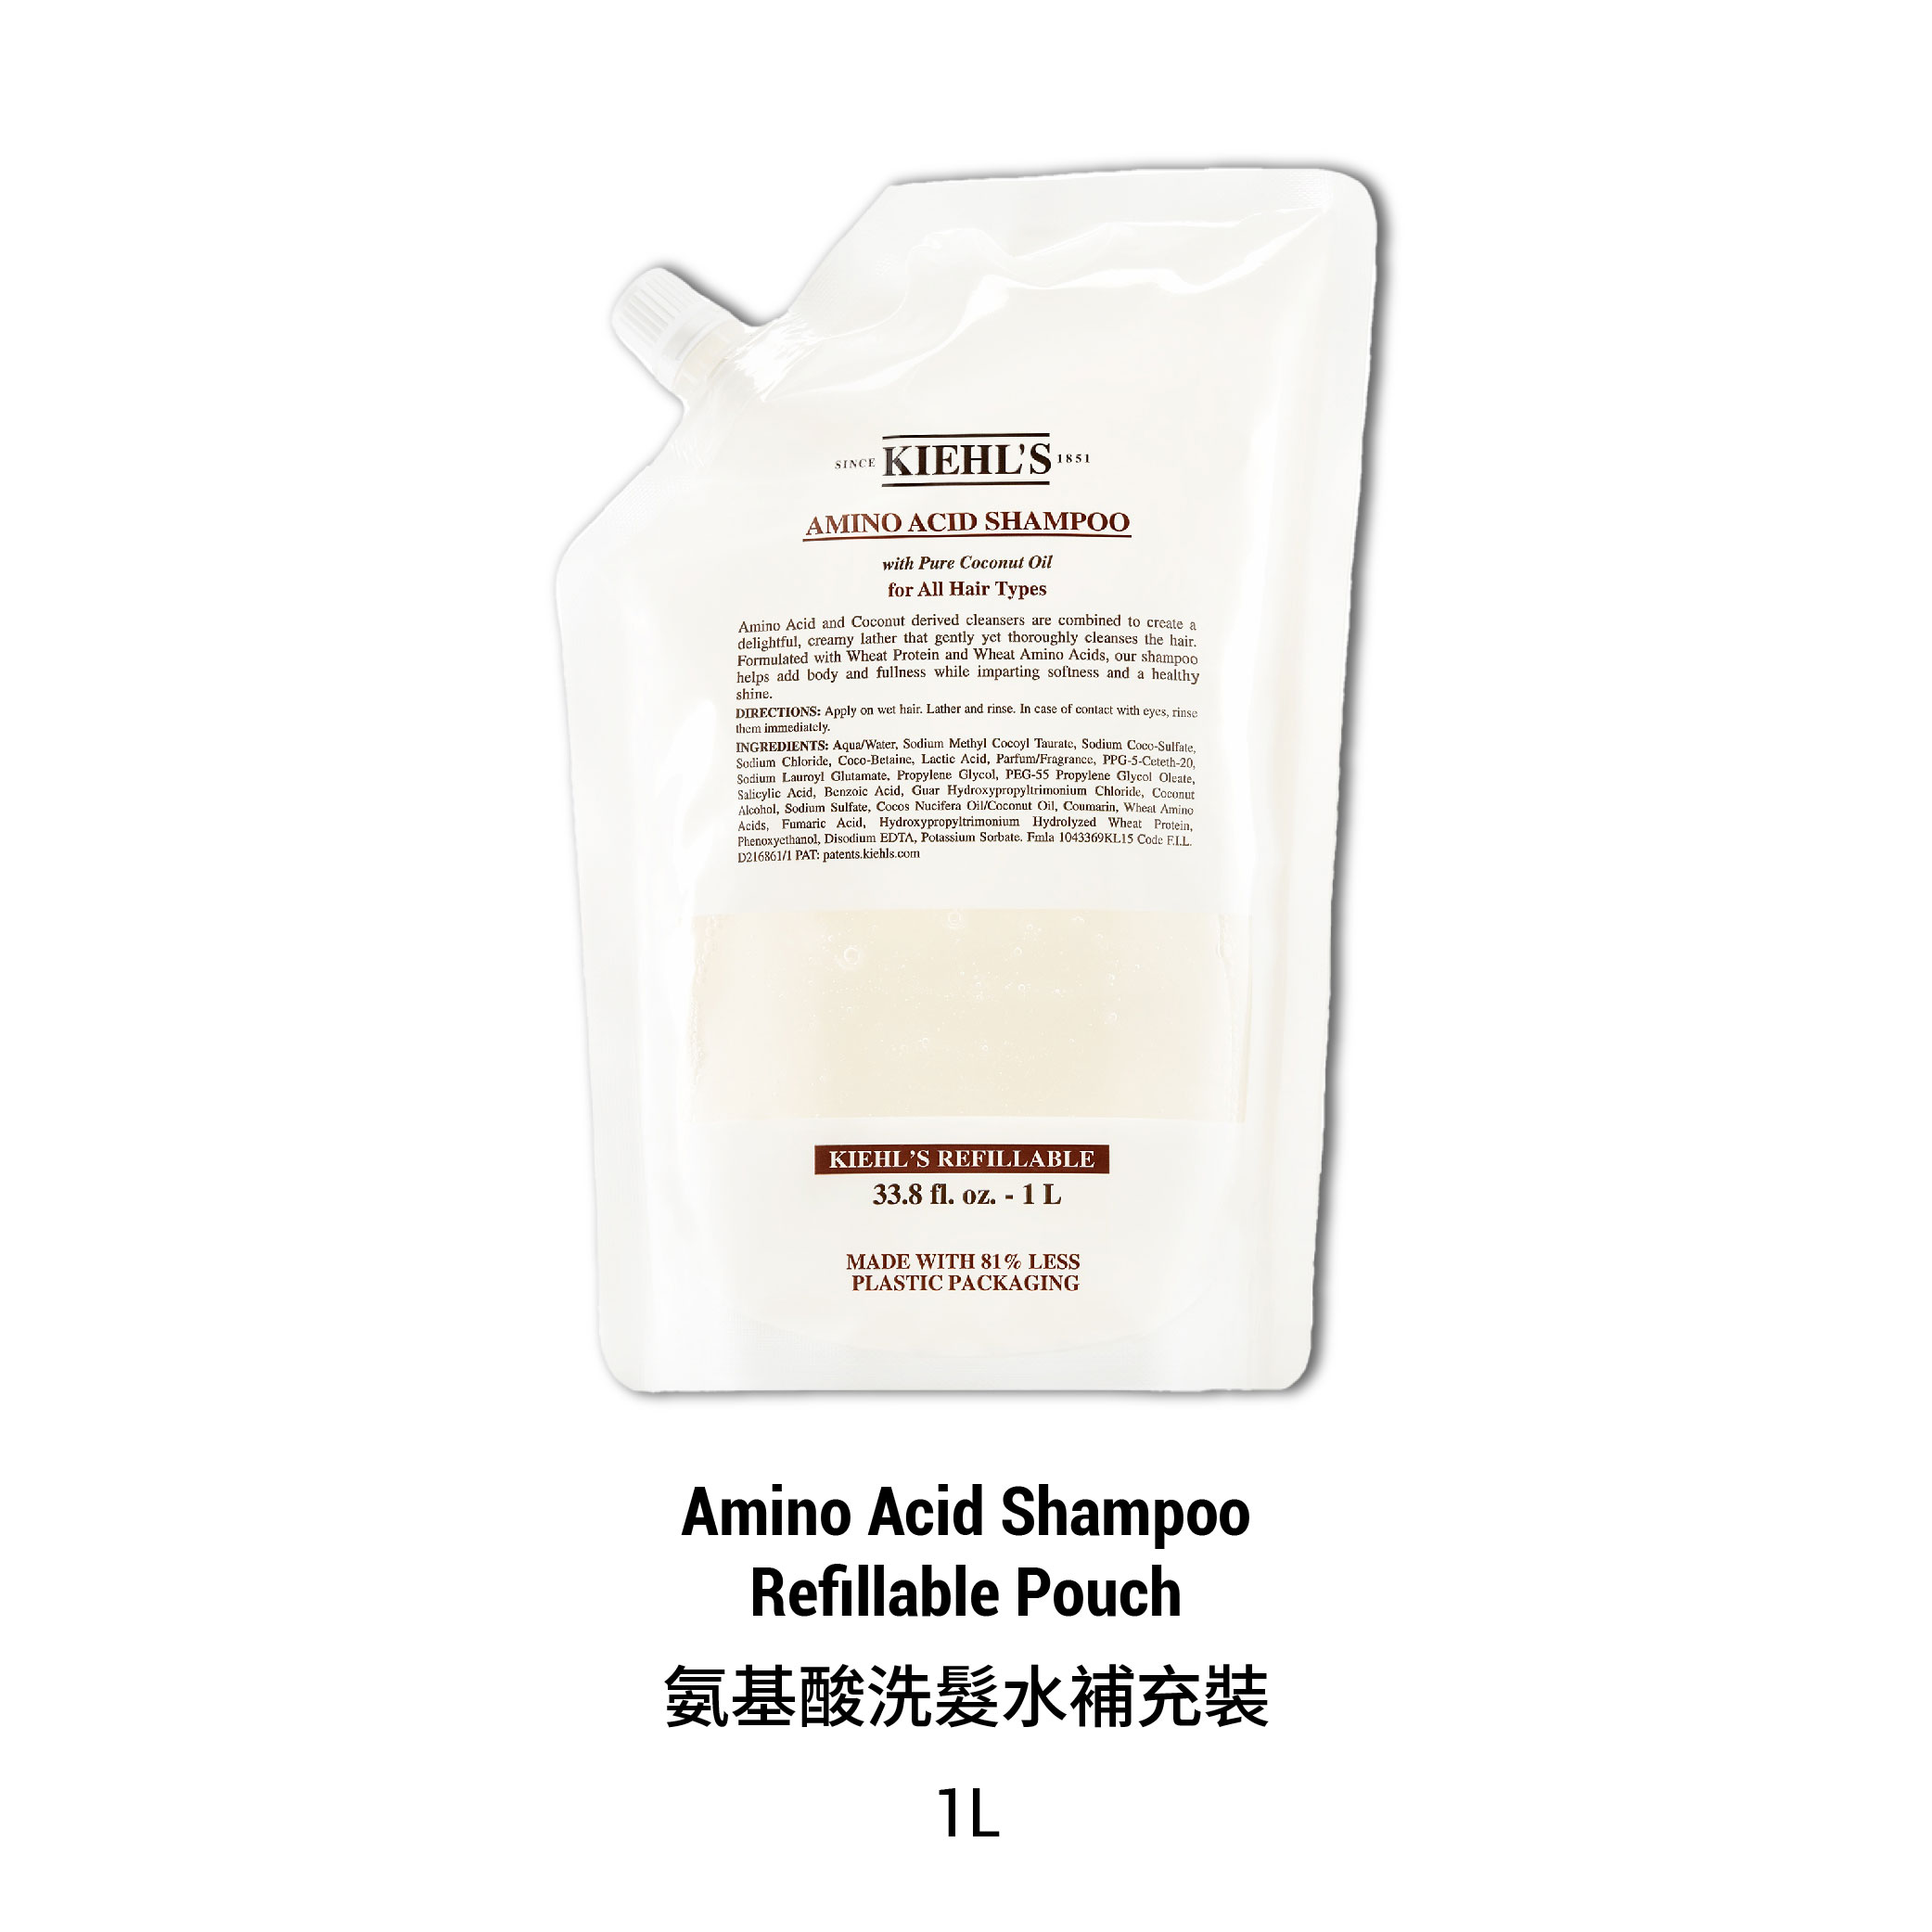 Amino Acid Shampoo Refill Set